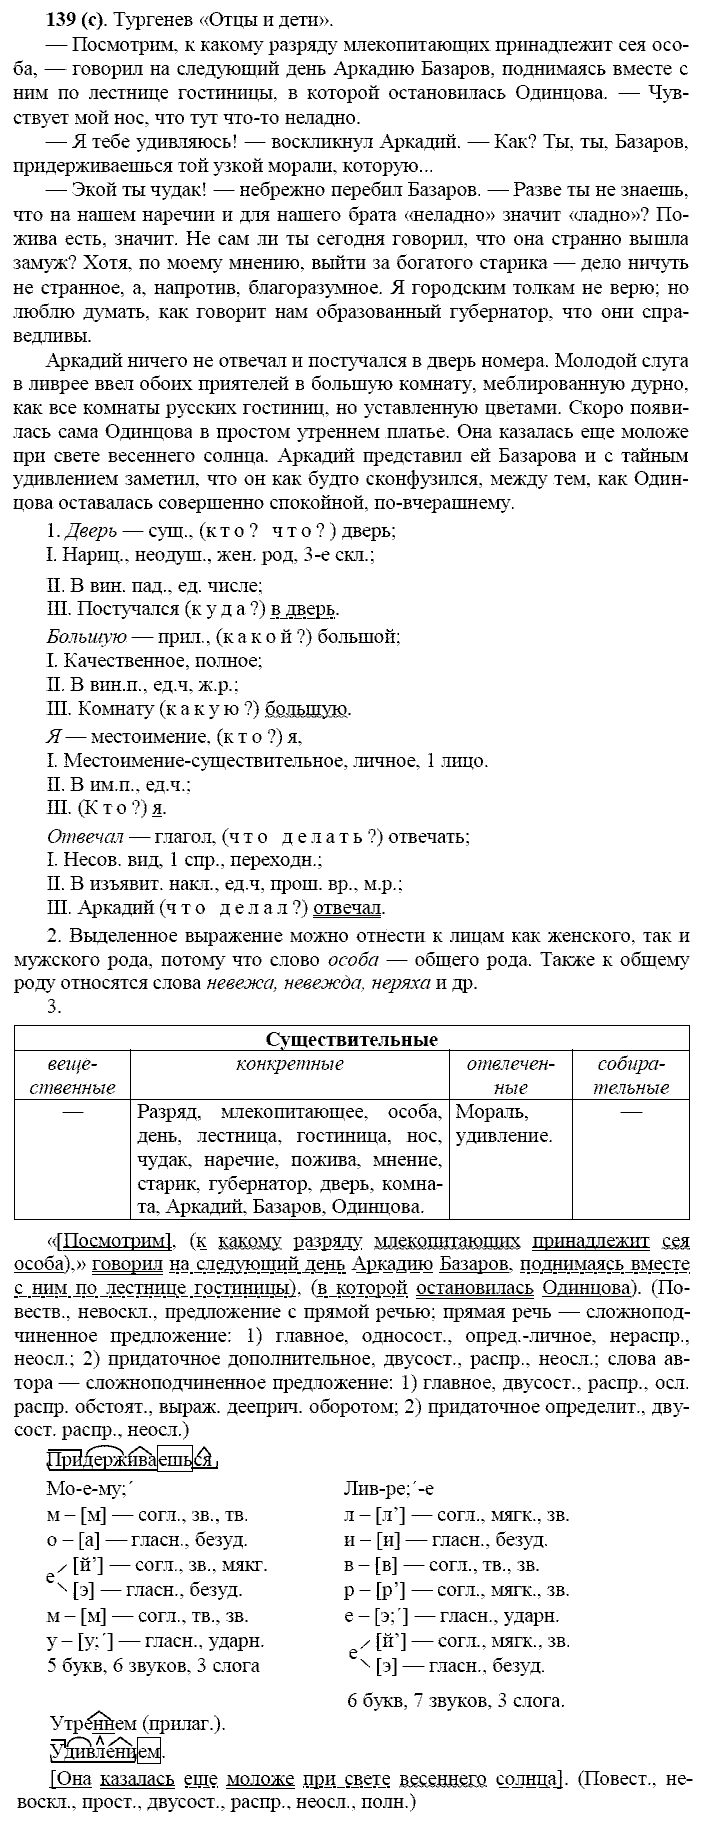 Русский язык, 11 класс, Власенков, Рыбченков, 2009-2014, задание: 139 (с)